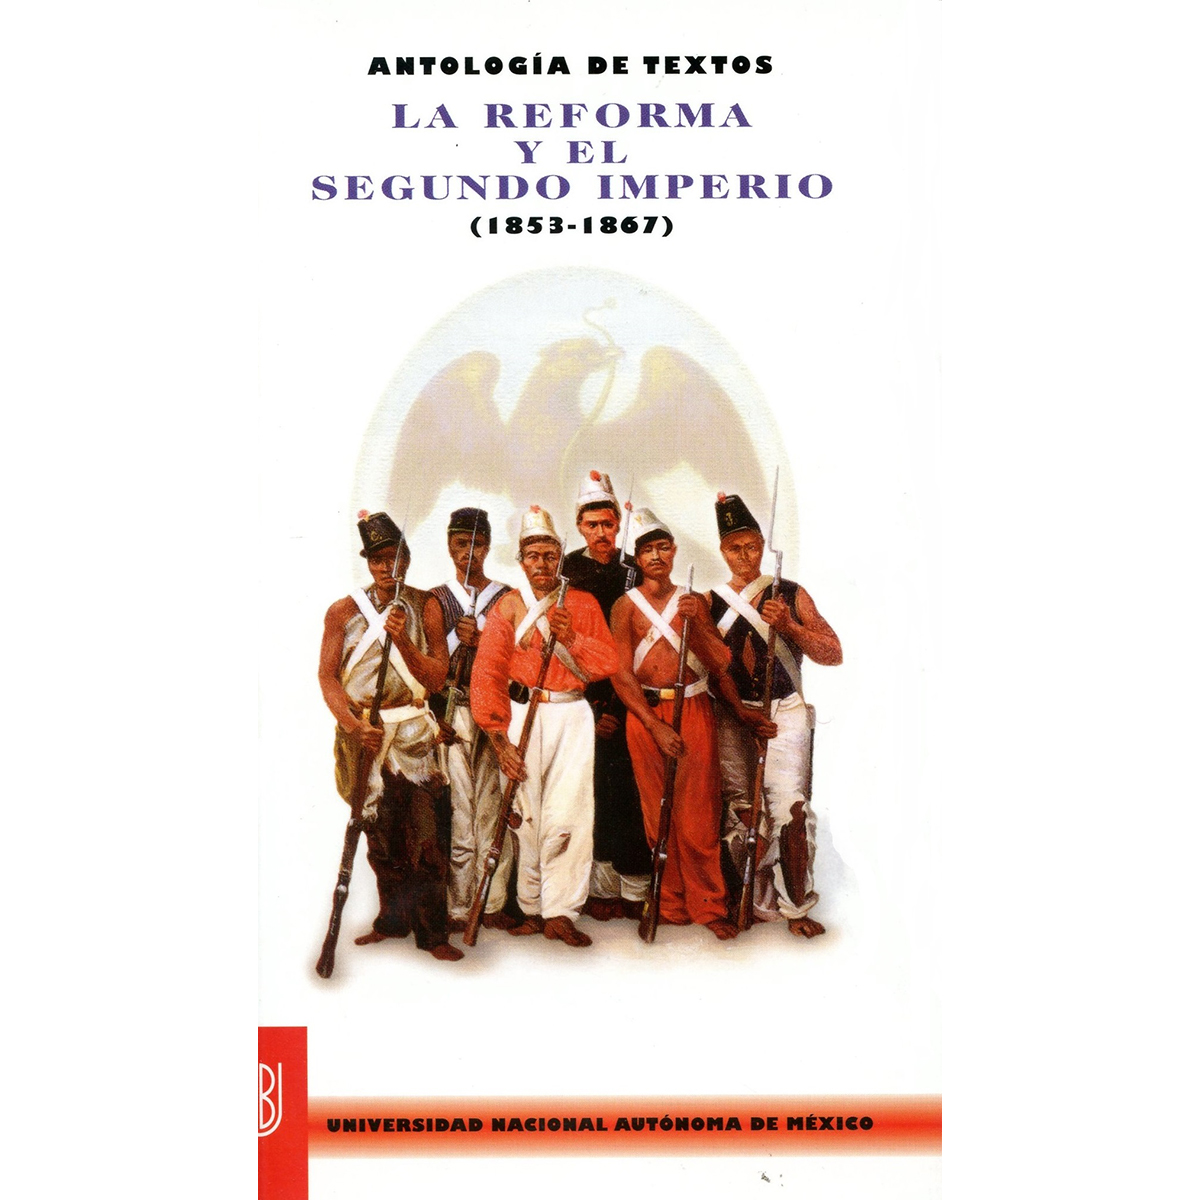 ANTOLOGÍA DE TEXTOS. LA REFORMA Y EL SEGUNDO IMPERIO (1853-1867)